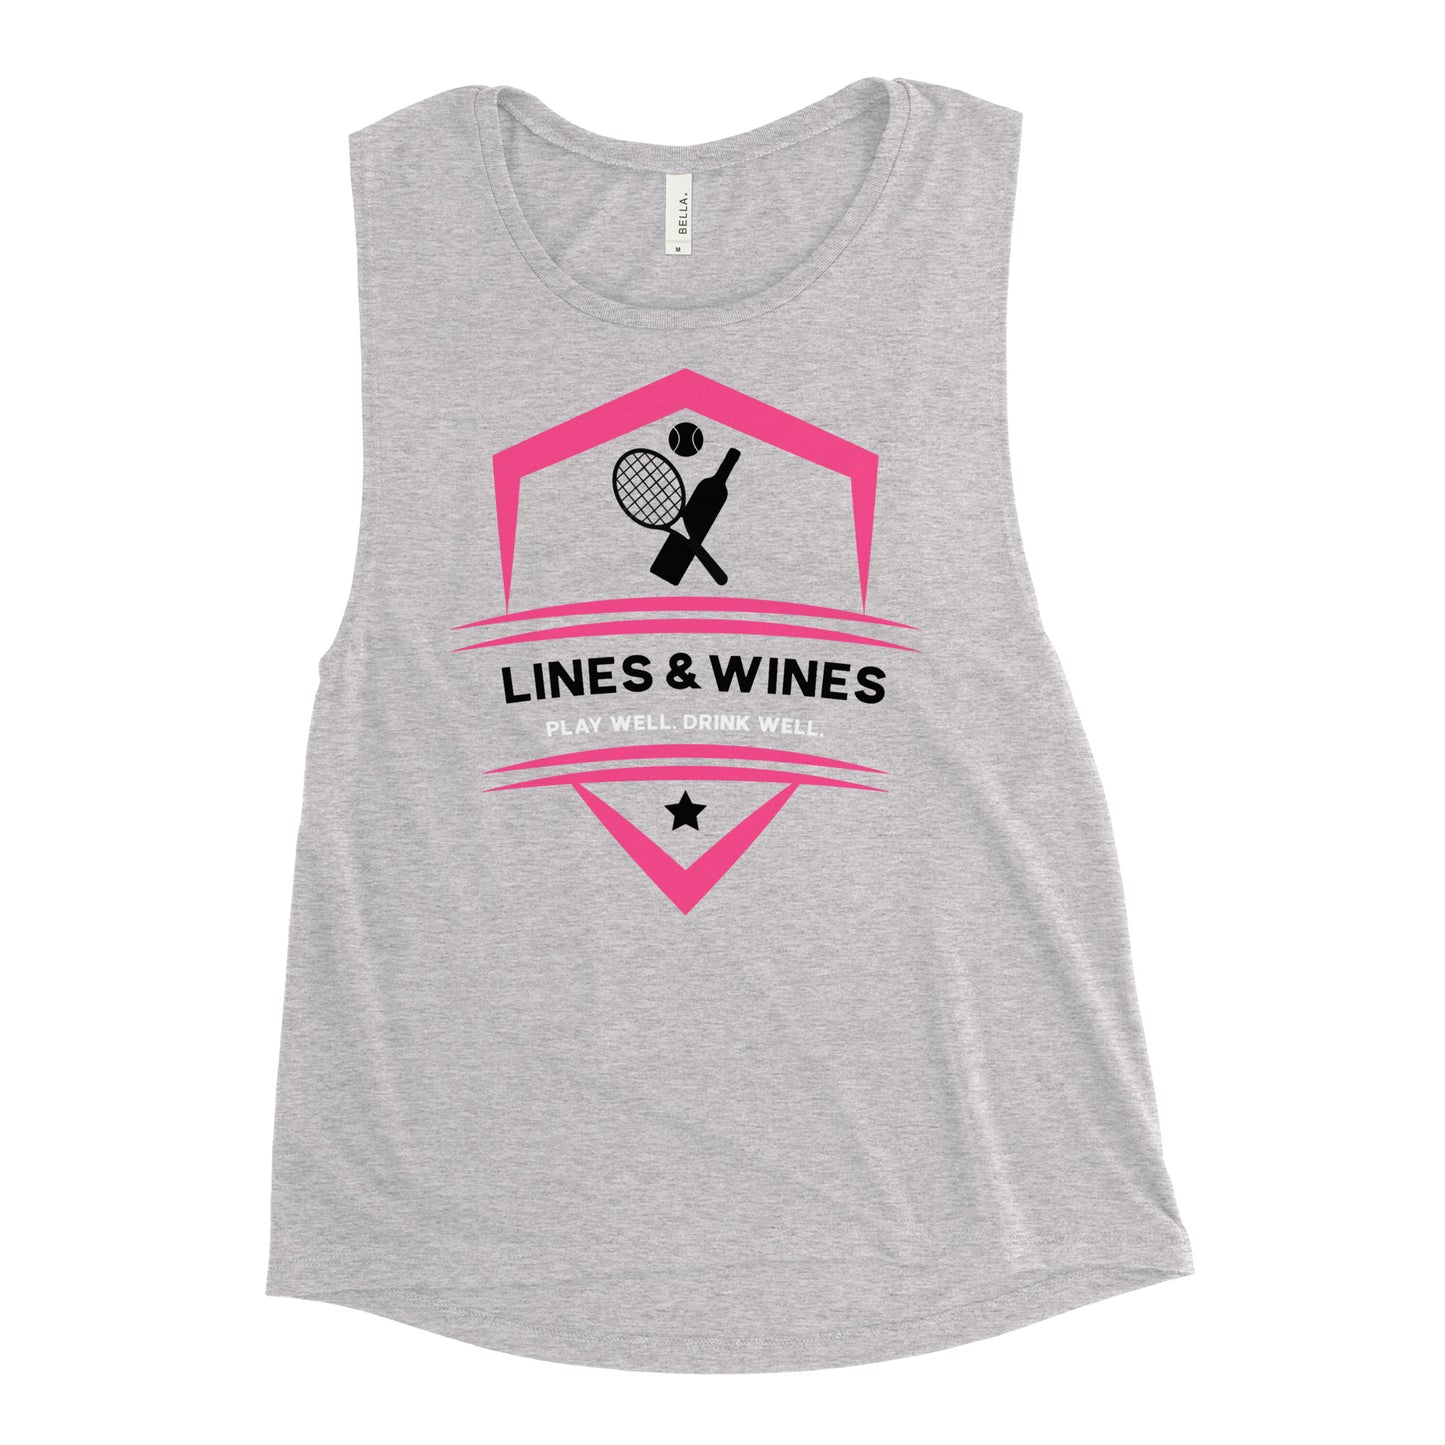 Lines & Wines tennis team Ladies’ muscle tank